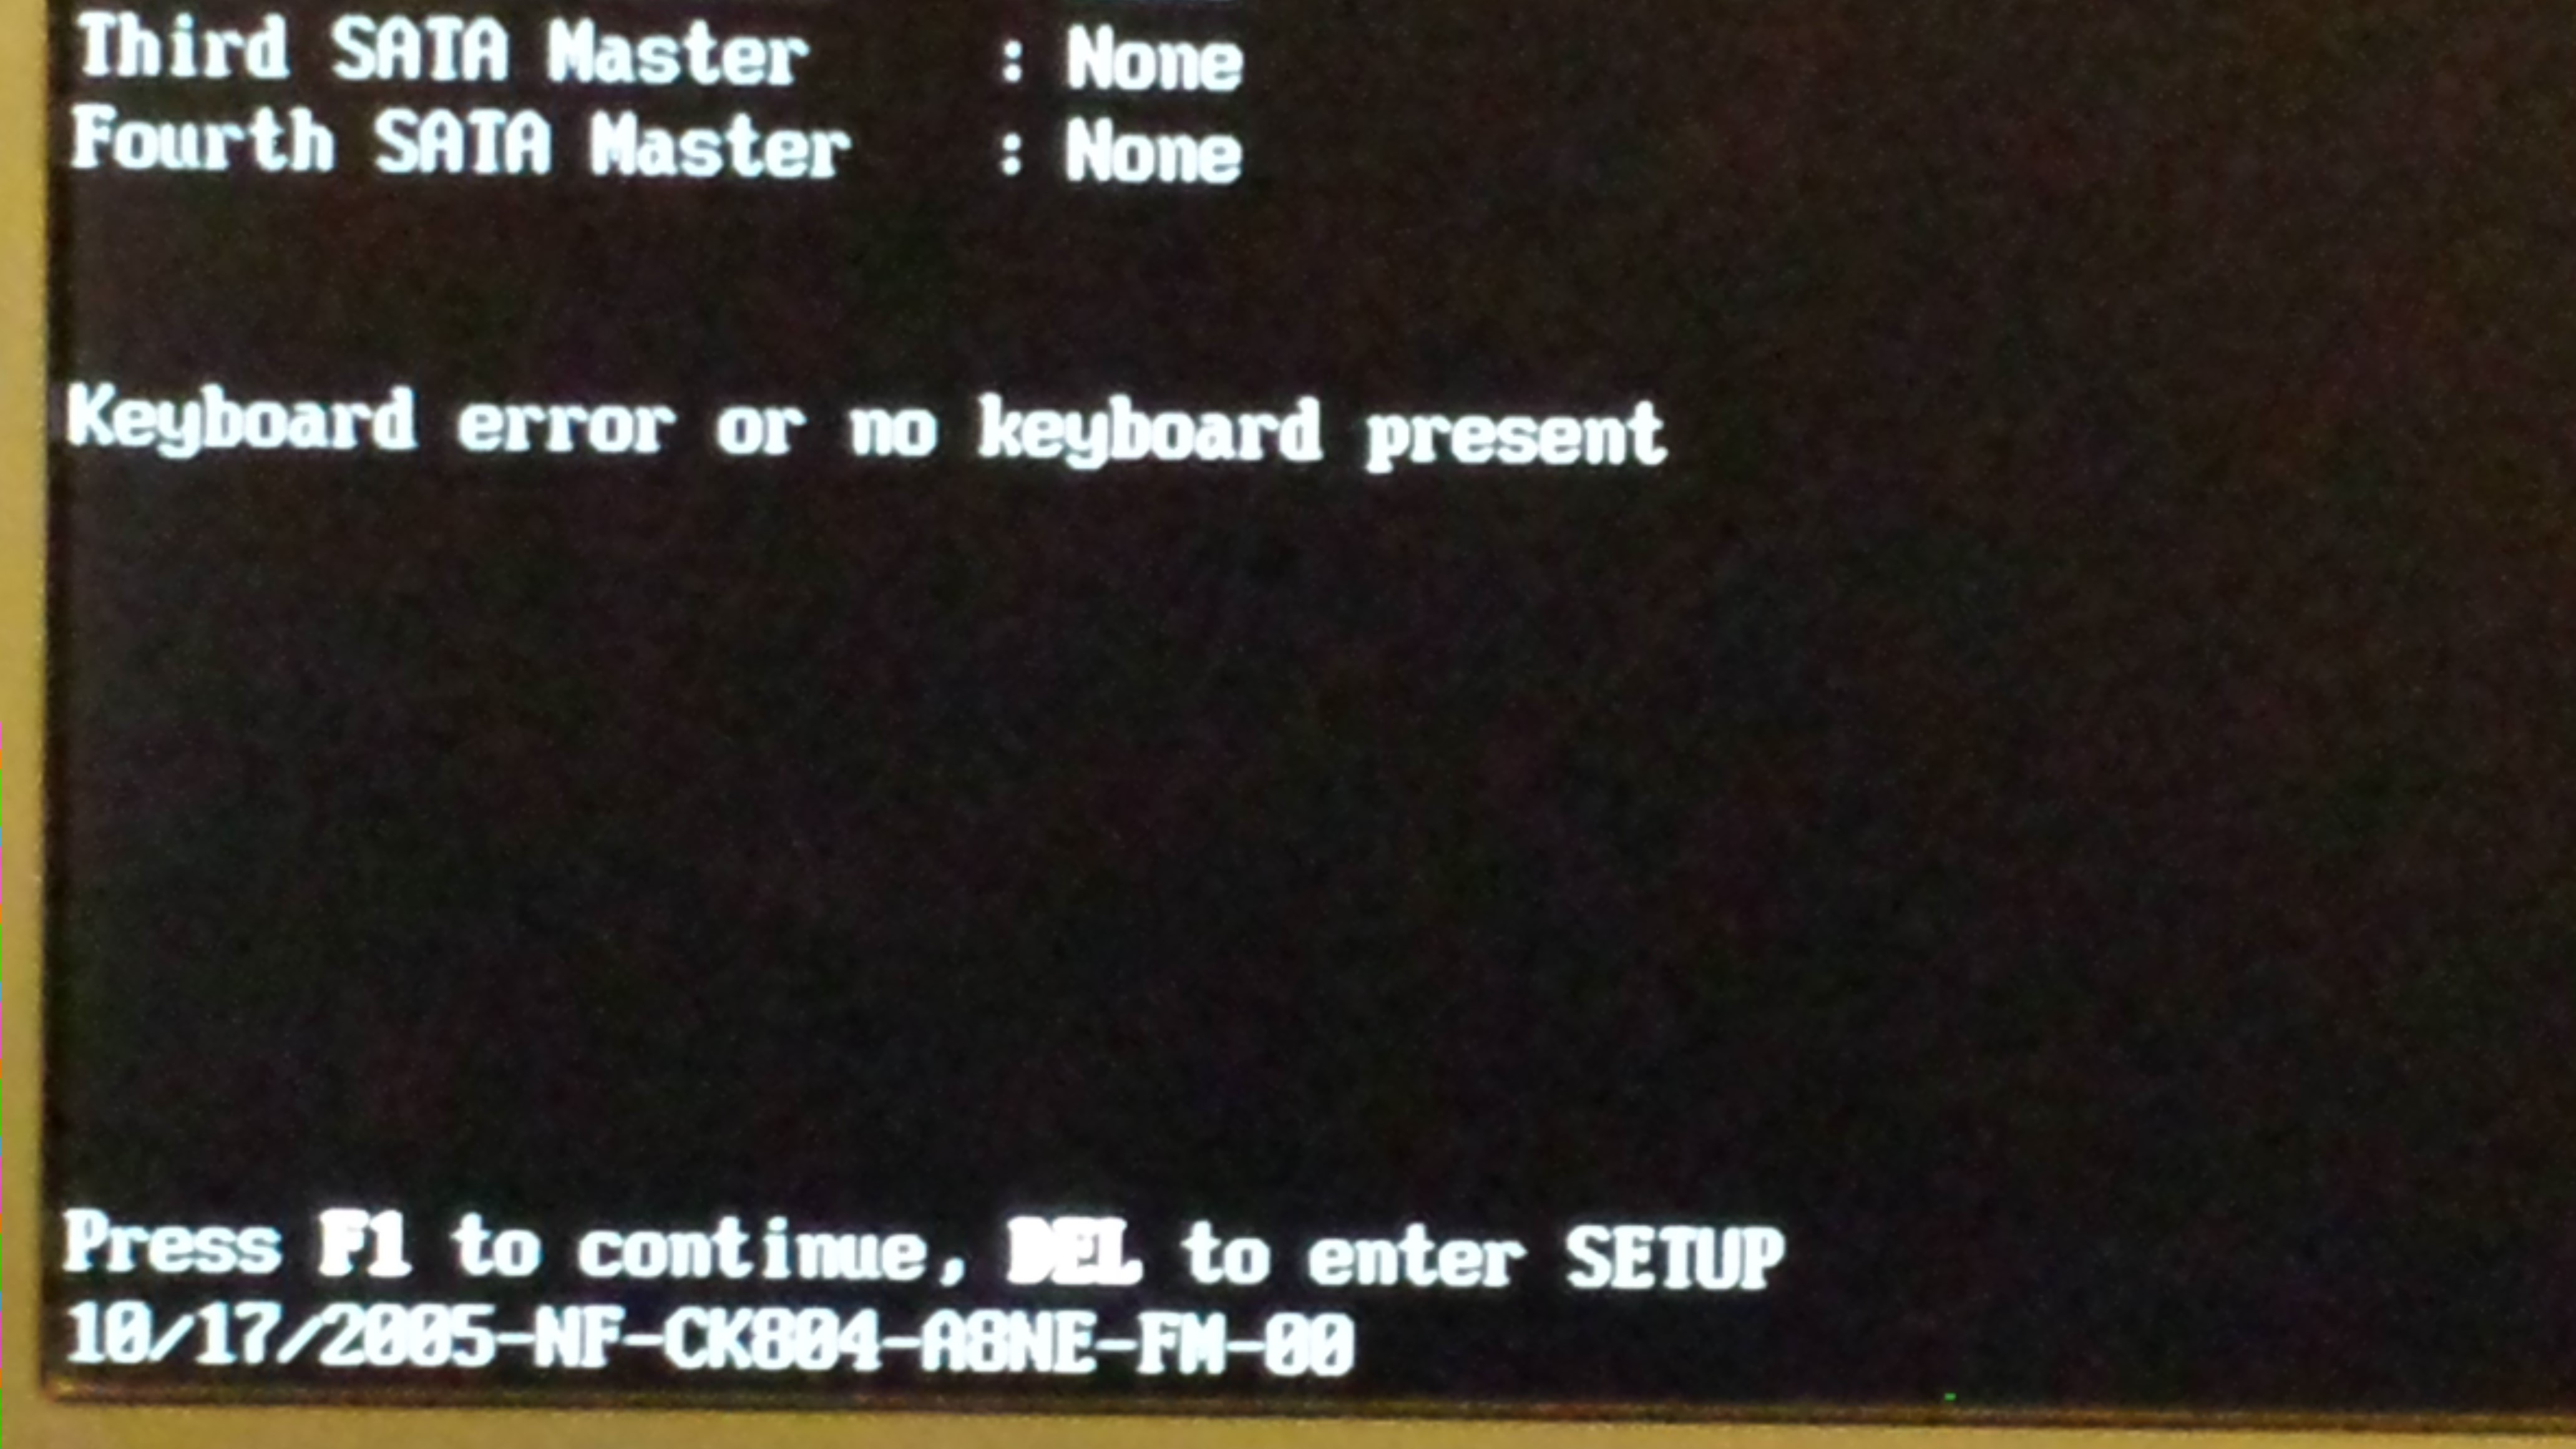 Keyboard error - Press F1